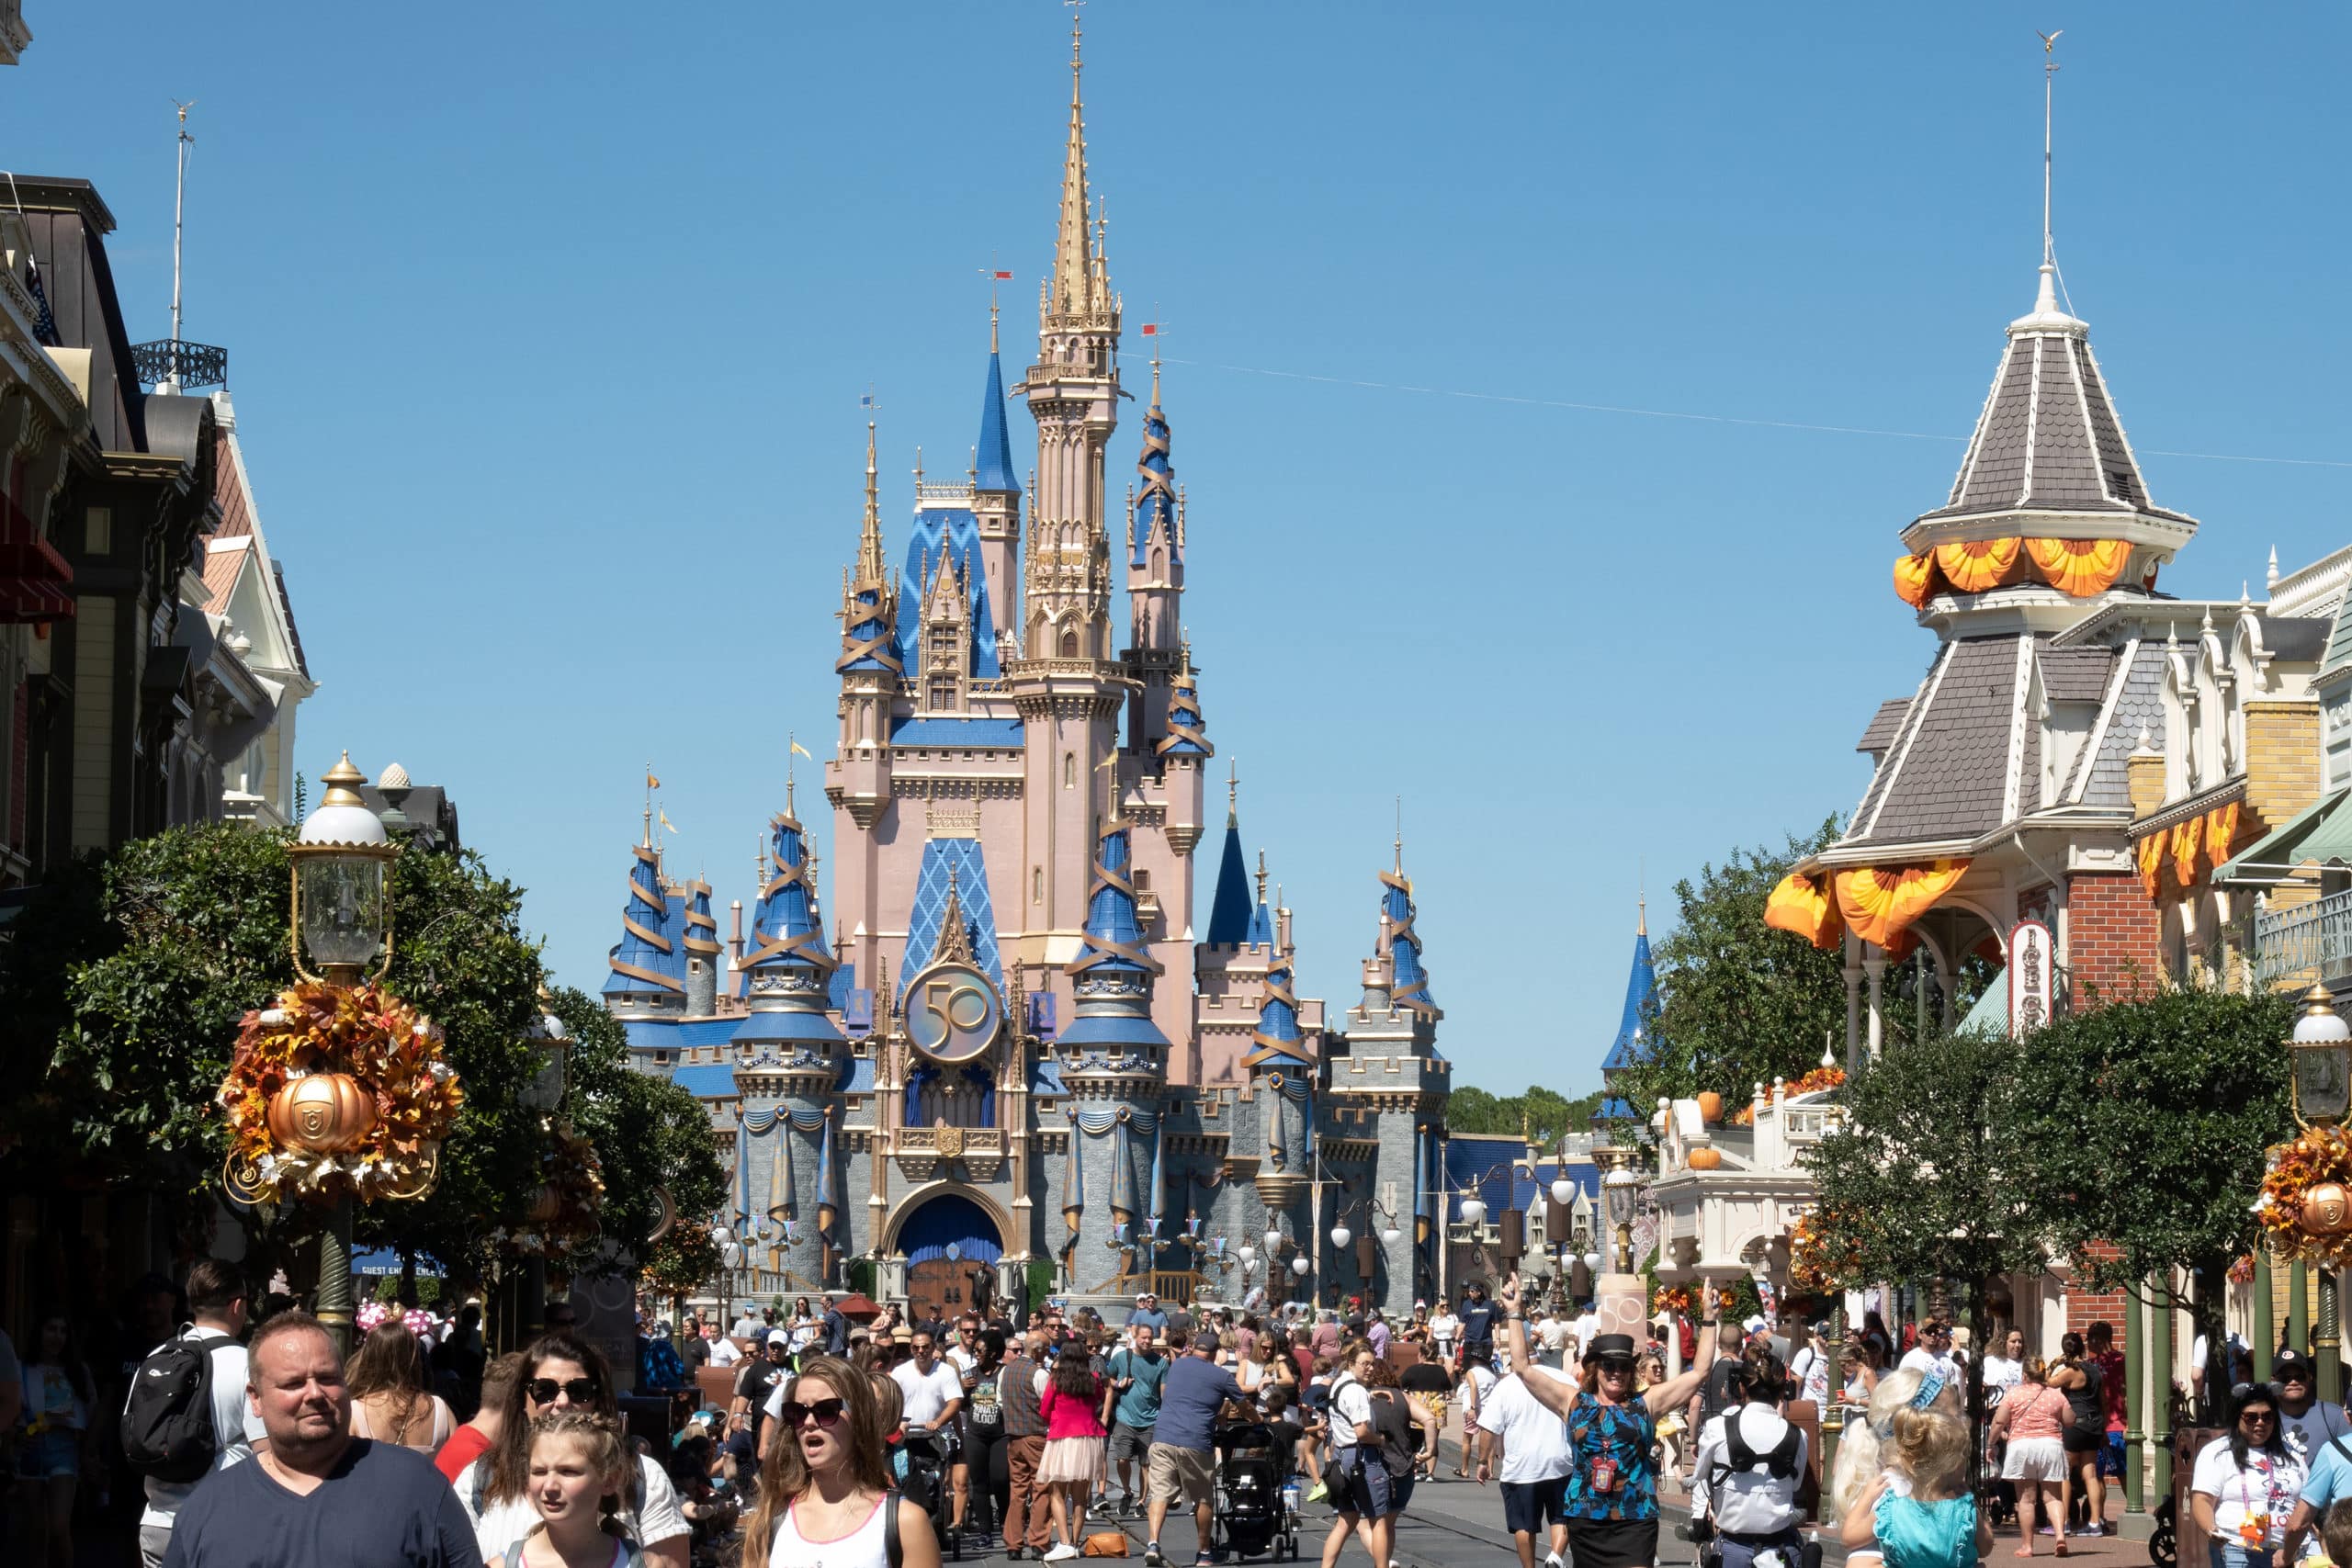 Disney demanda al gobernador de Florida y lo acusa de “venganza” política